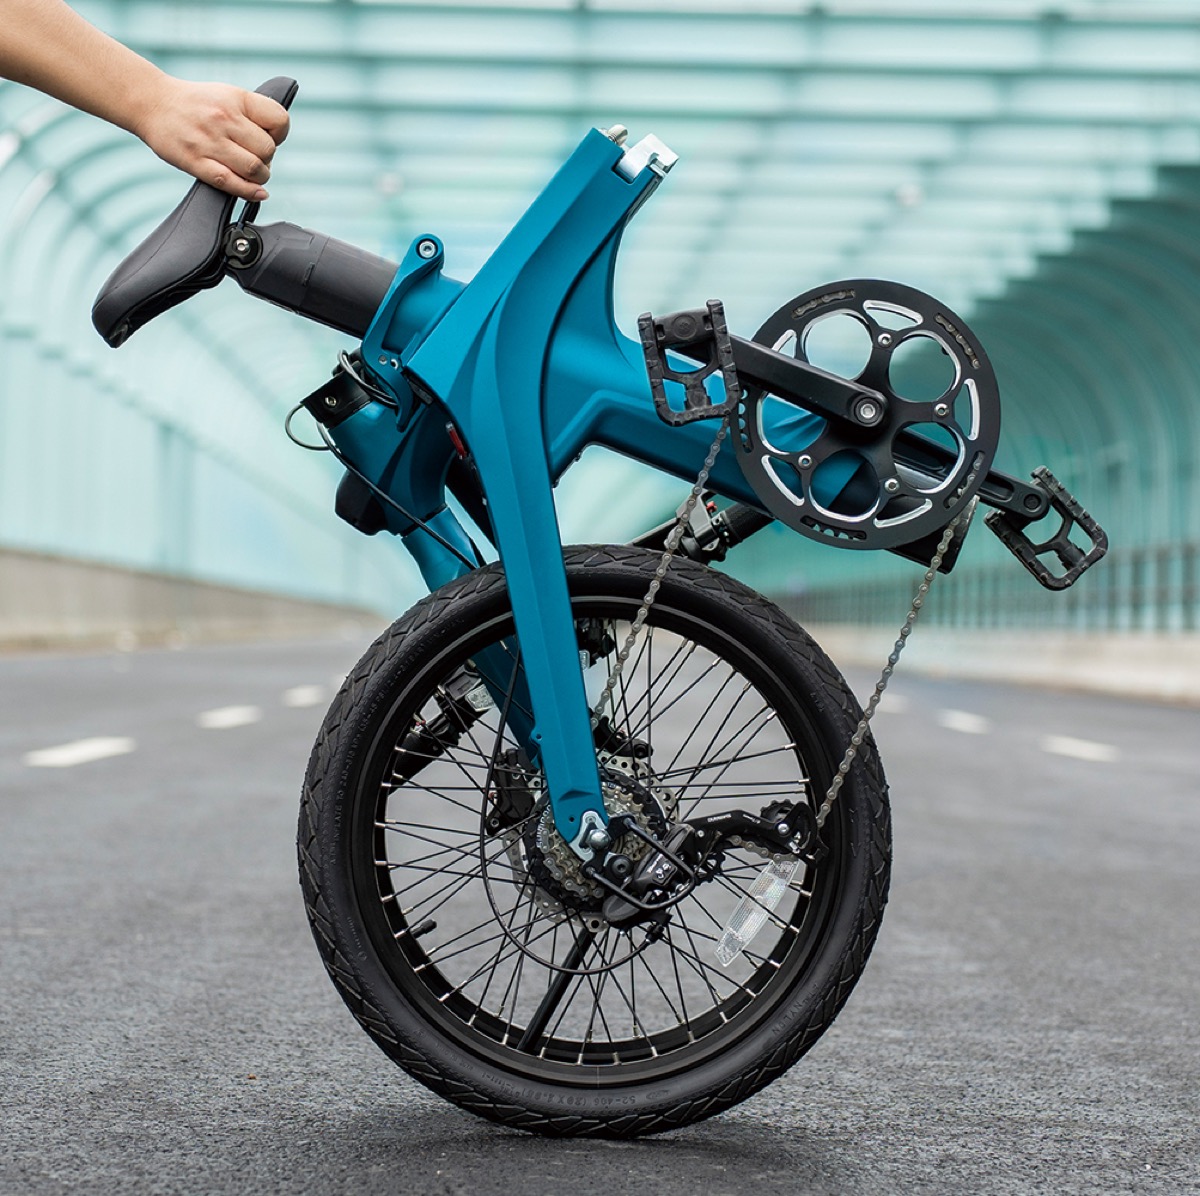 Fiido X, la bici elettrica di design con 200 dollari di sconto al lancio